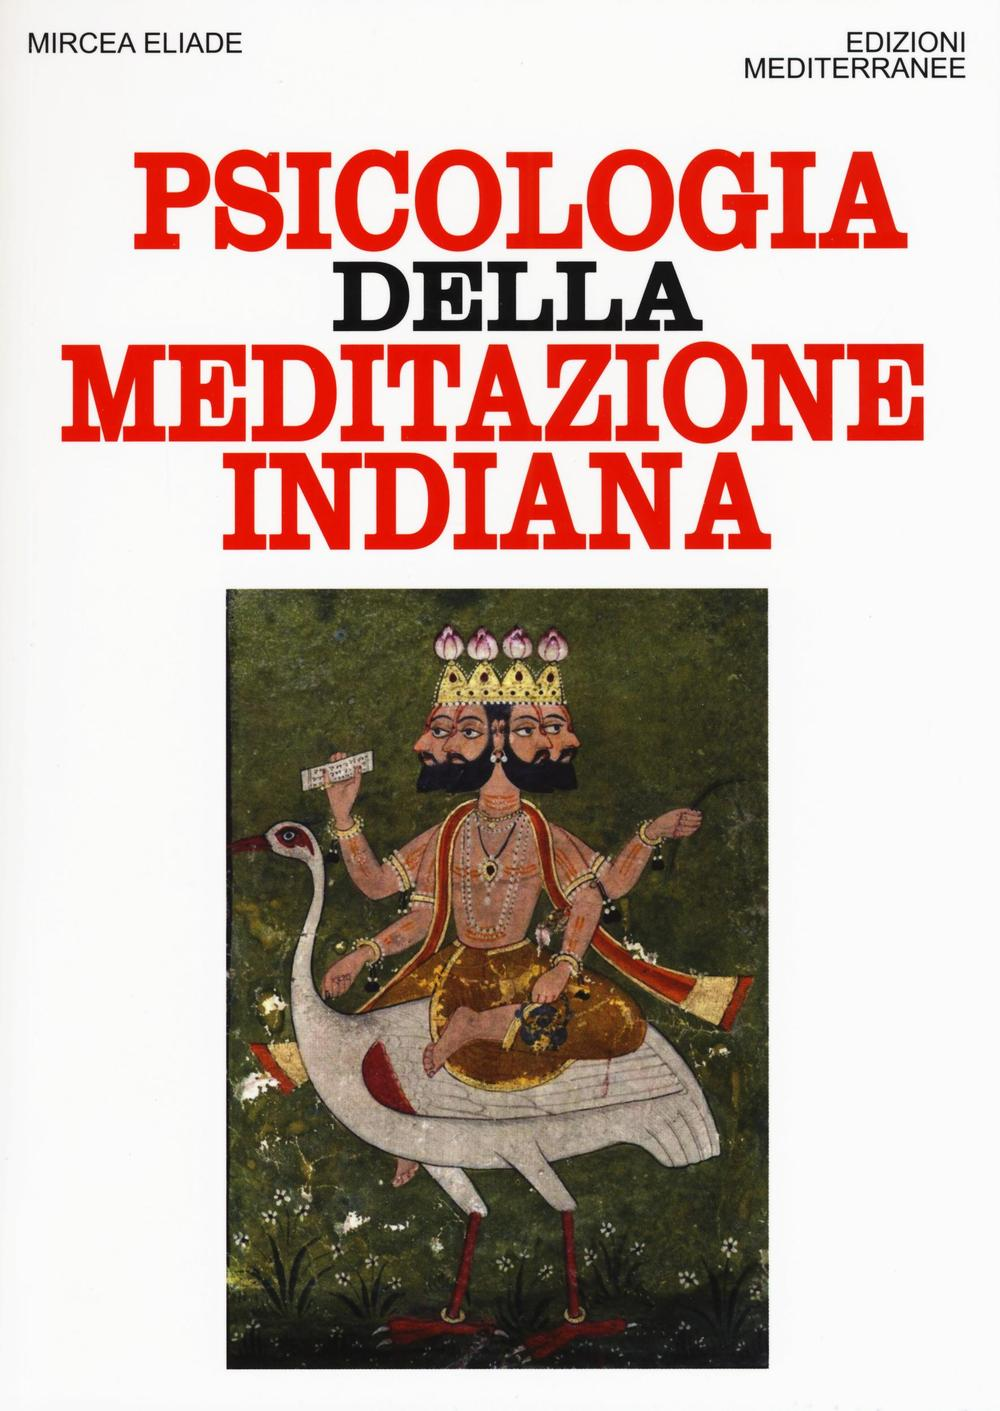 Image of Psicologia della meditazione indiana